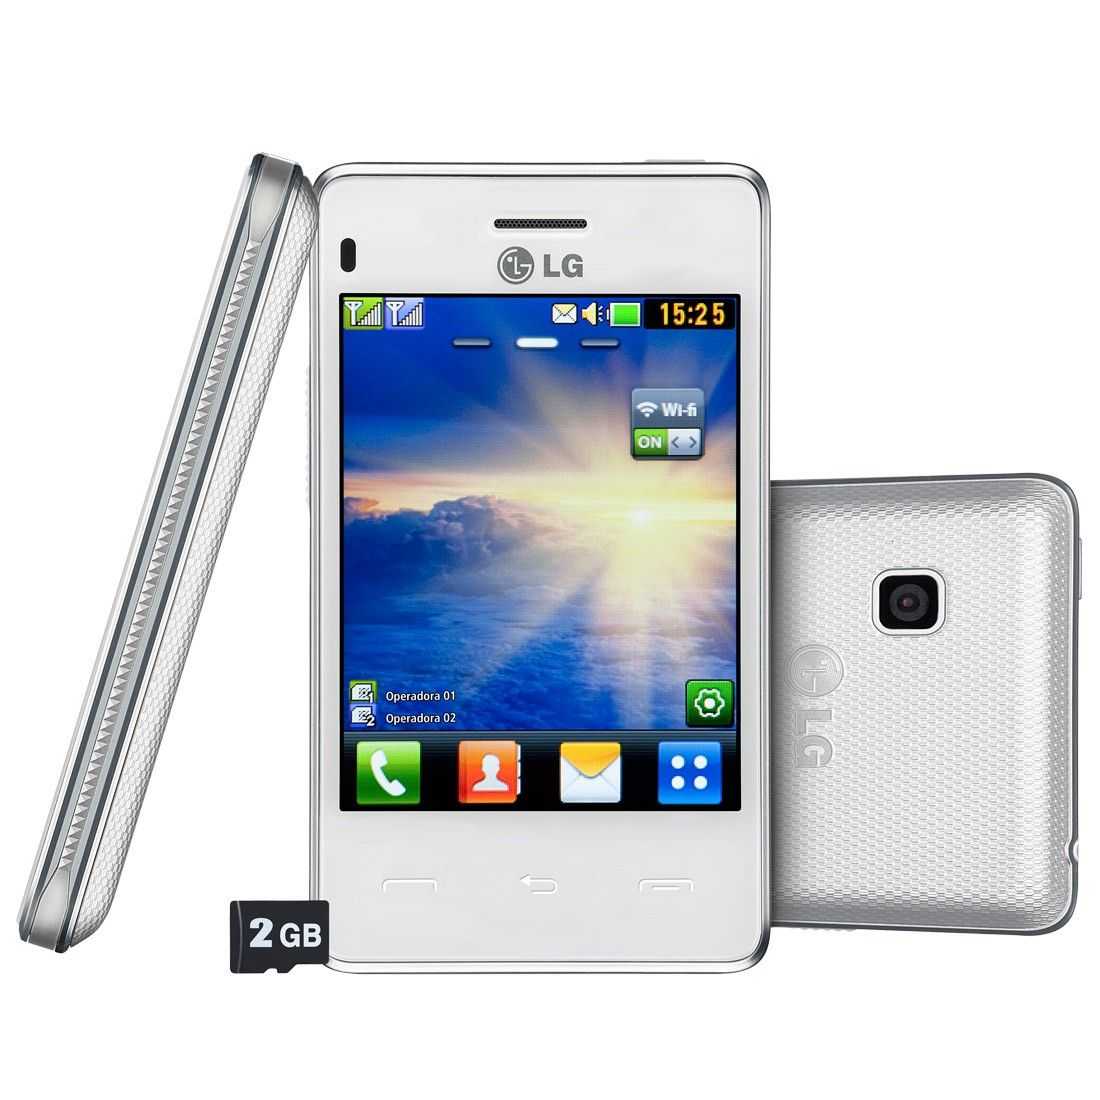 Lg t375 white titan (белый) - купить , скидки, цена, отзывы, обзор, характеристики - мобильные телефоны